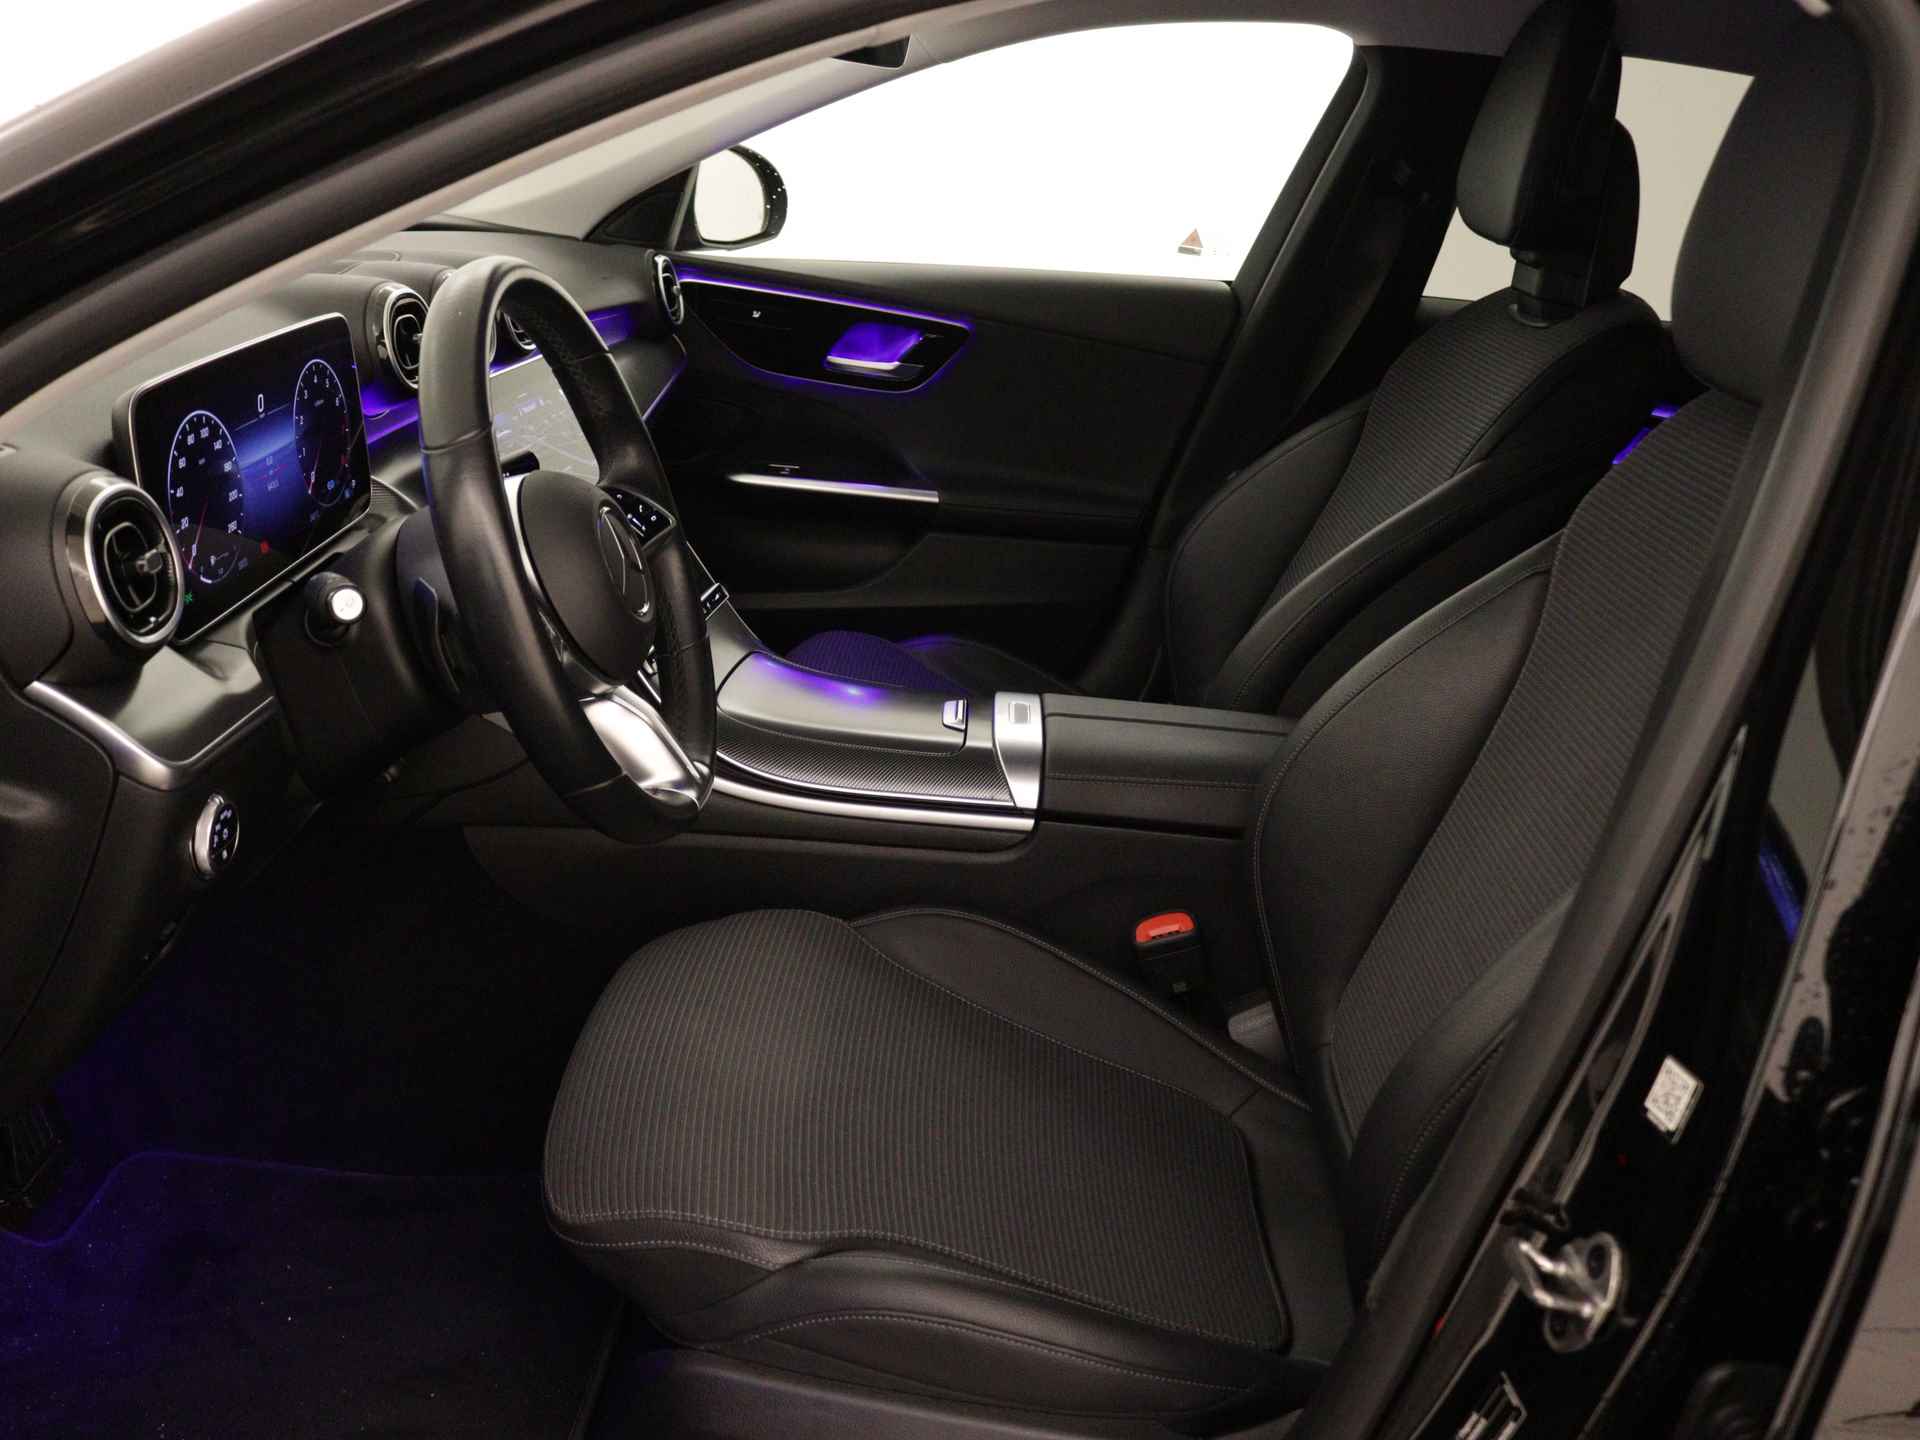 Mercedes-Benz C-Klasse 180 Luxury Line AMG lichtmetalen velgen | Navigatie | MBUX | Parking support | Trekhaak elct wegklapbaar | inclusief 24 maanden MB Certified garantie voor europa - 15/38